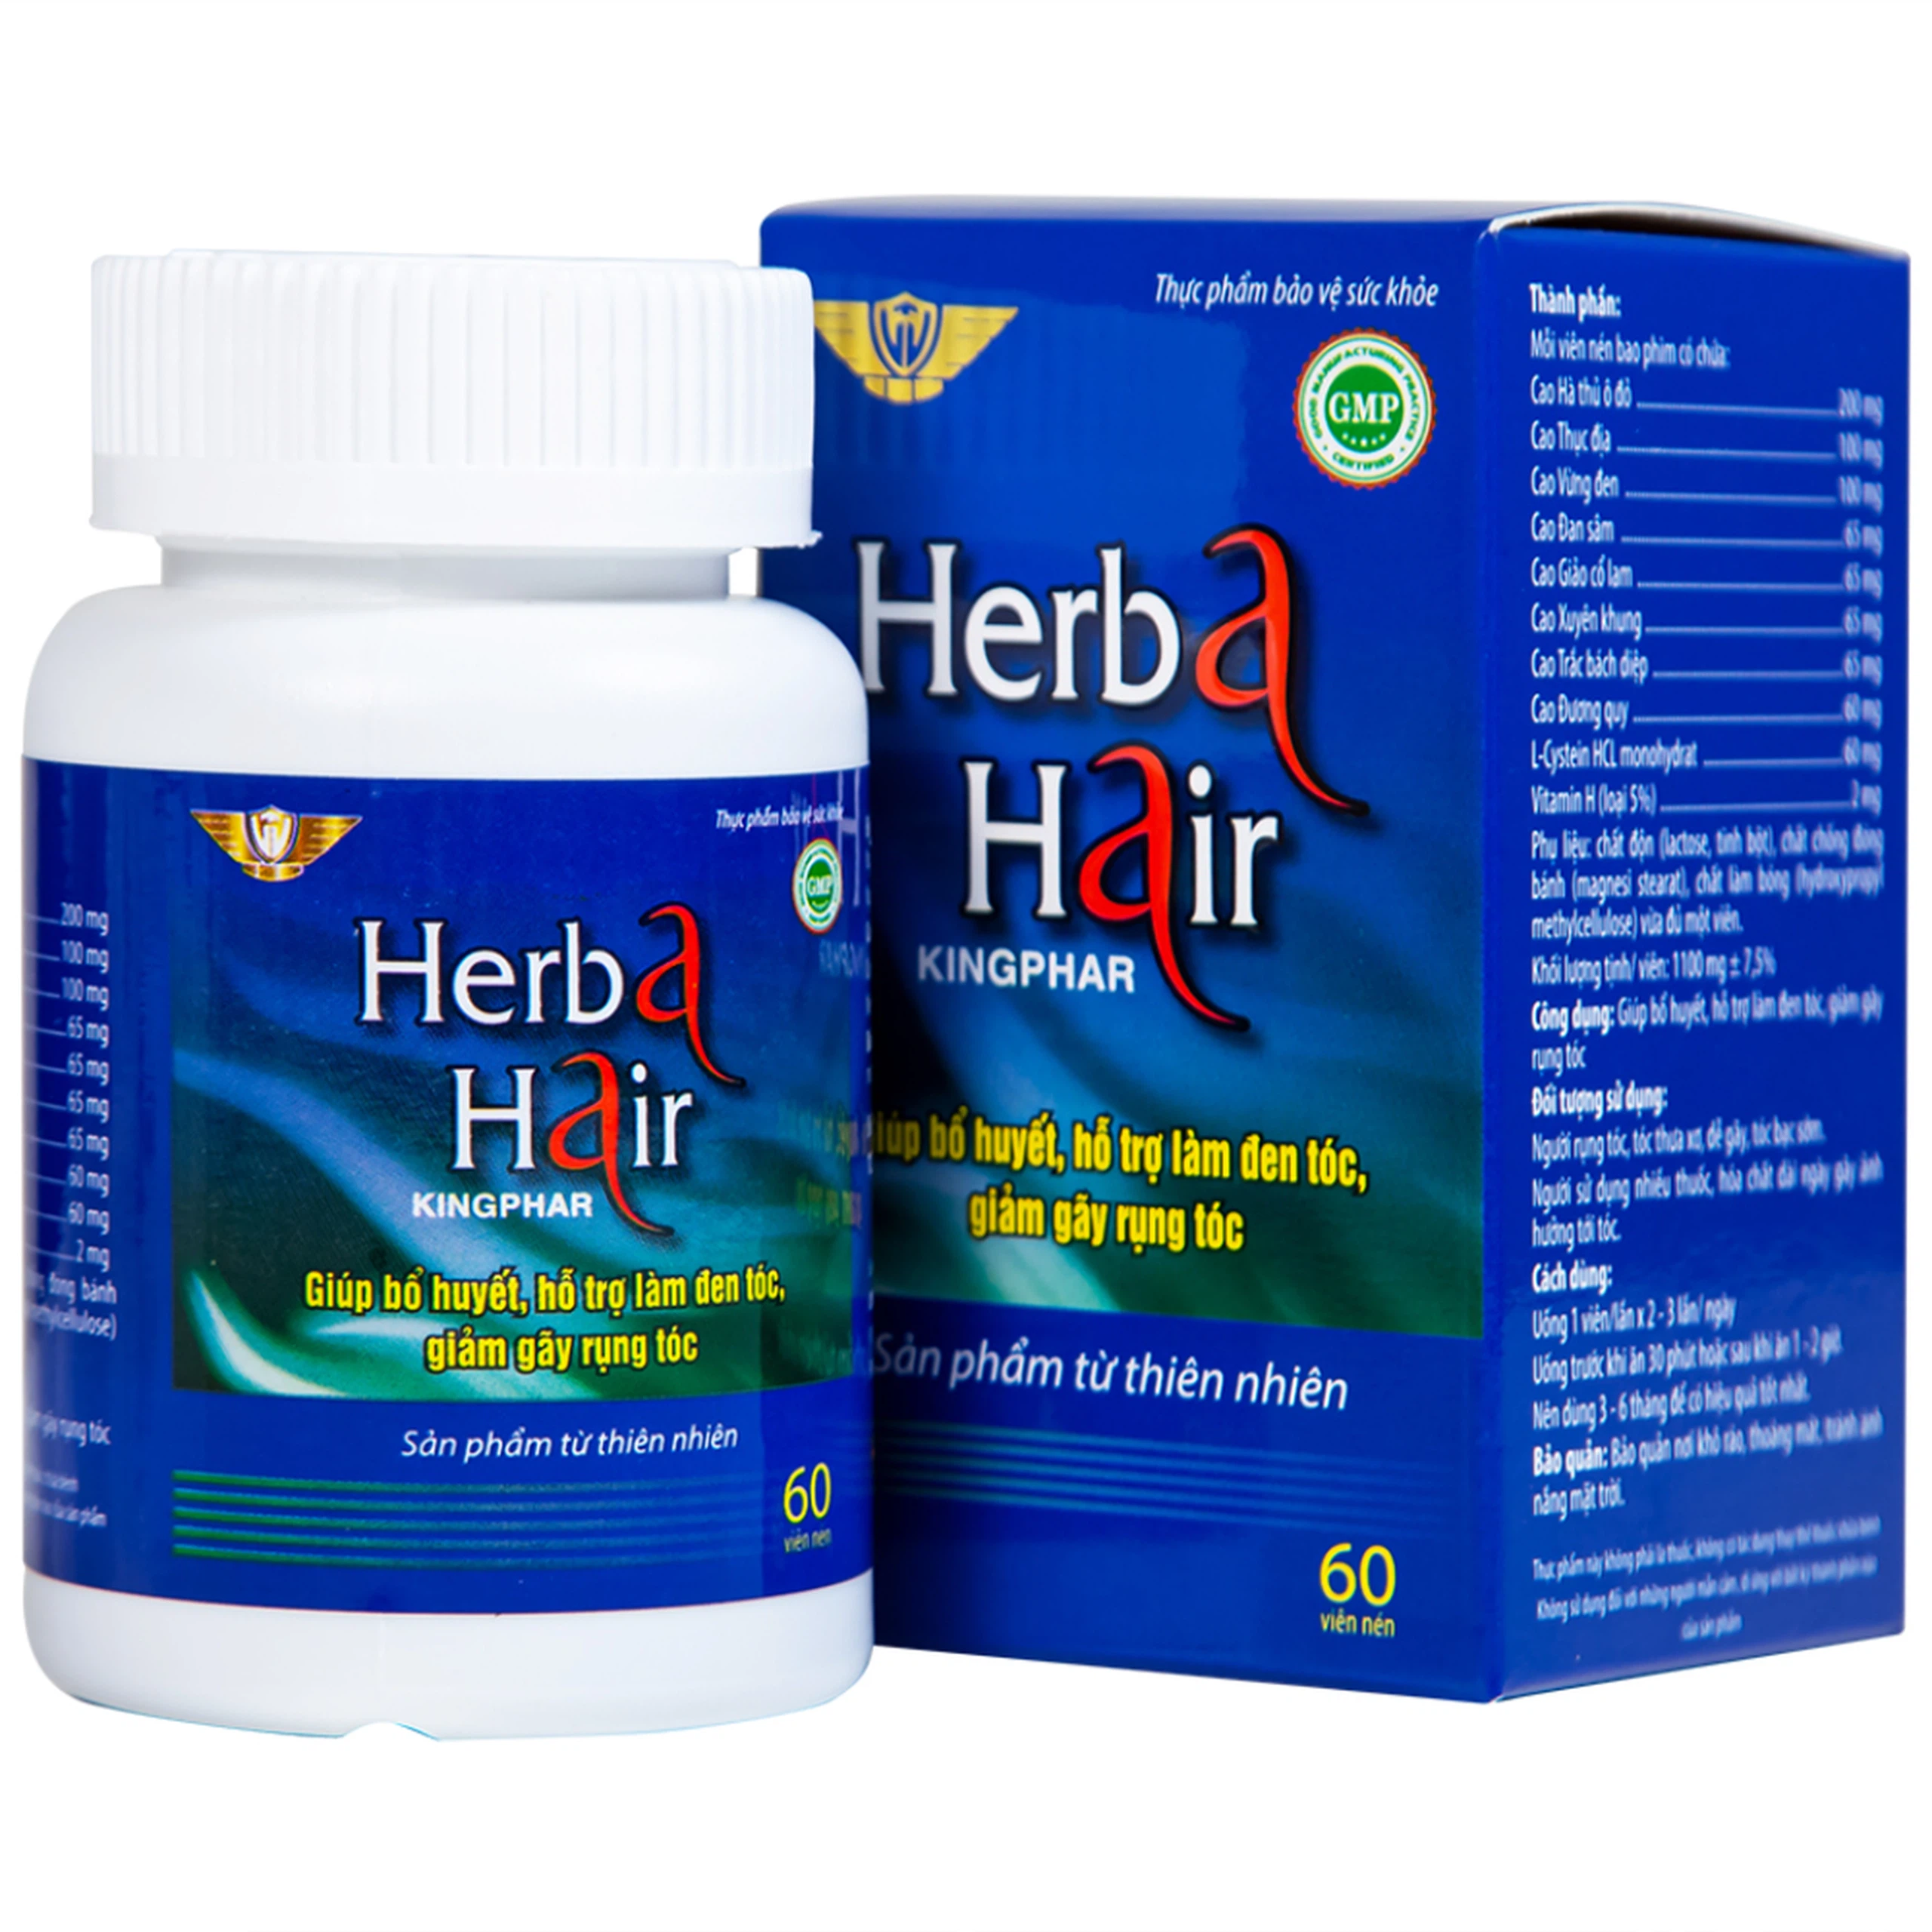 Viên uống Herba Hair Kingphar bổ huyết, hỗ trợ làm đen tóc (60 viên)